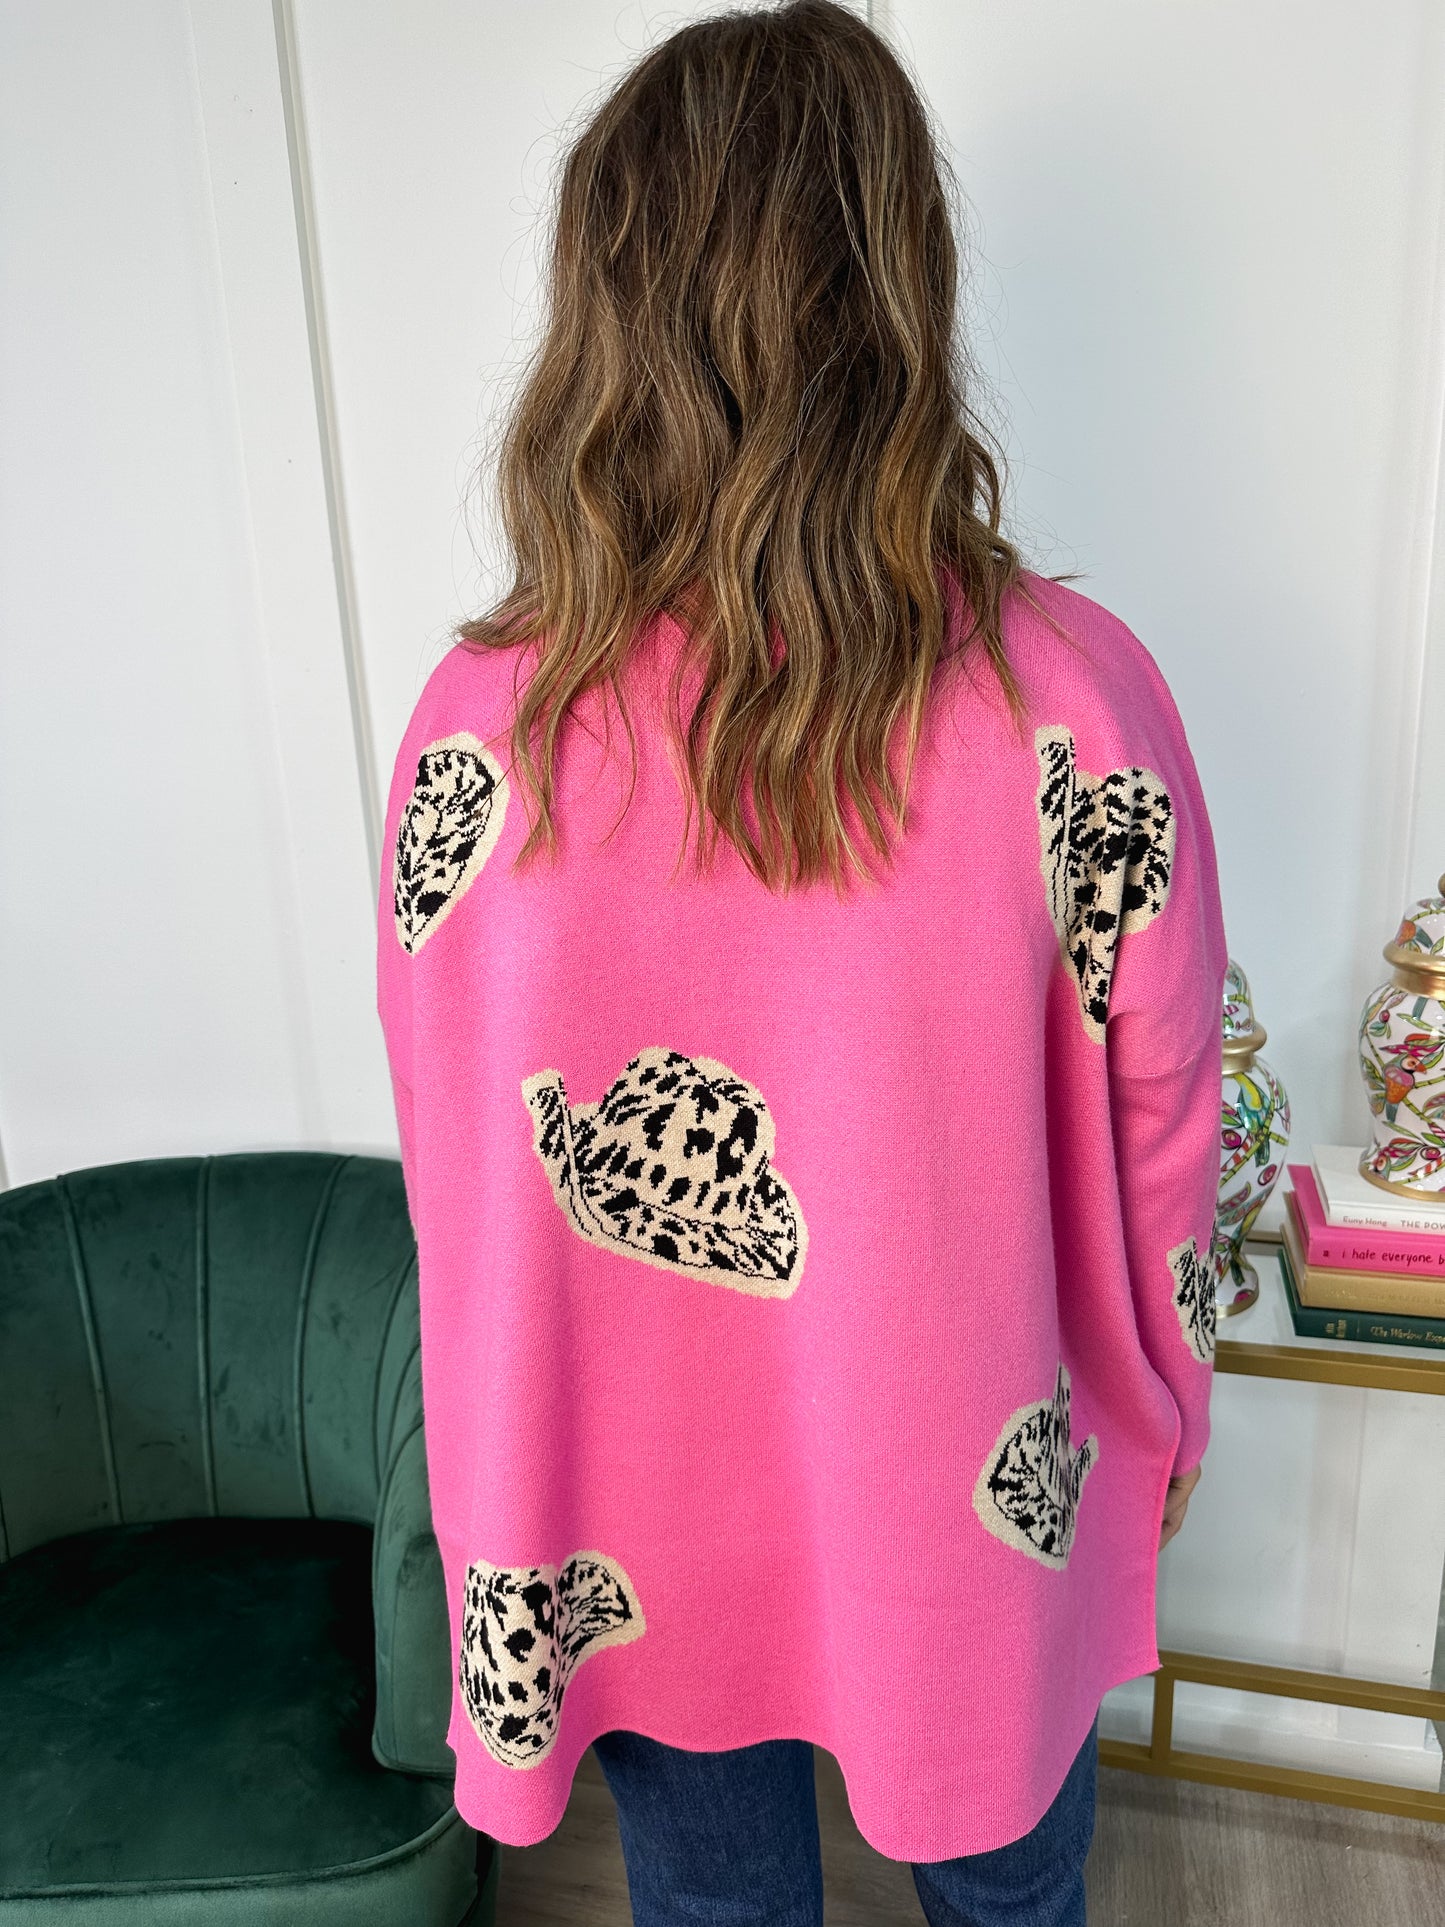 The Blushing Cheetah Sweater